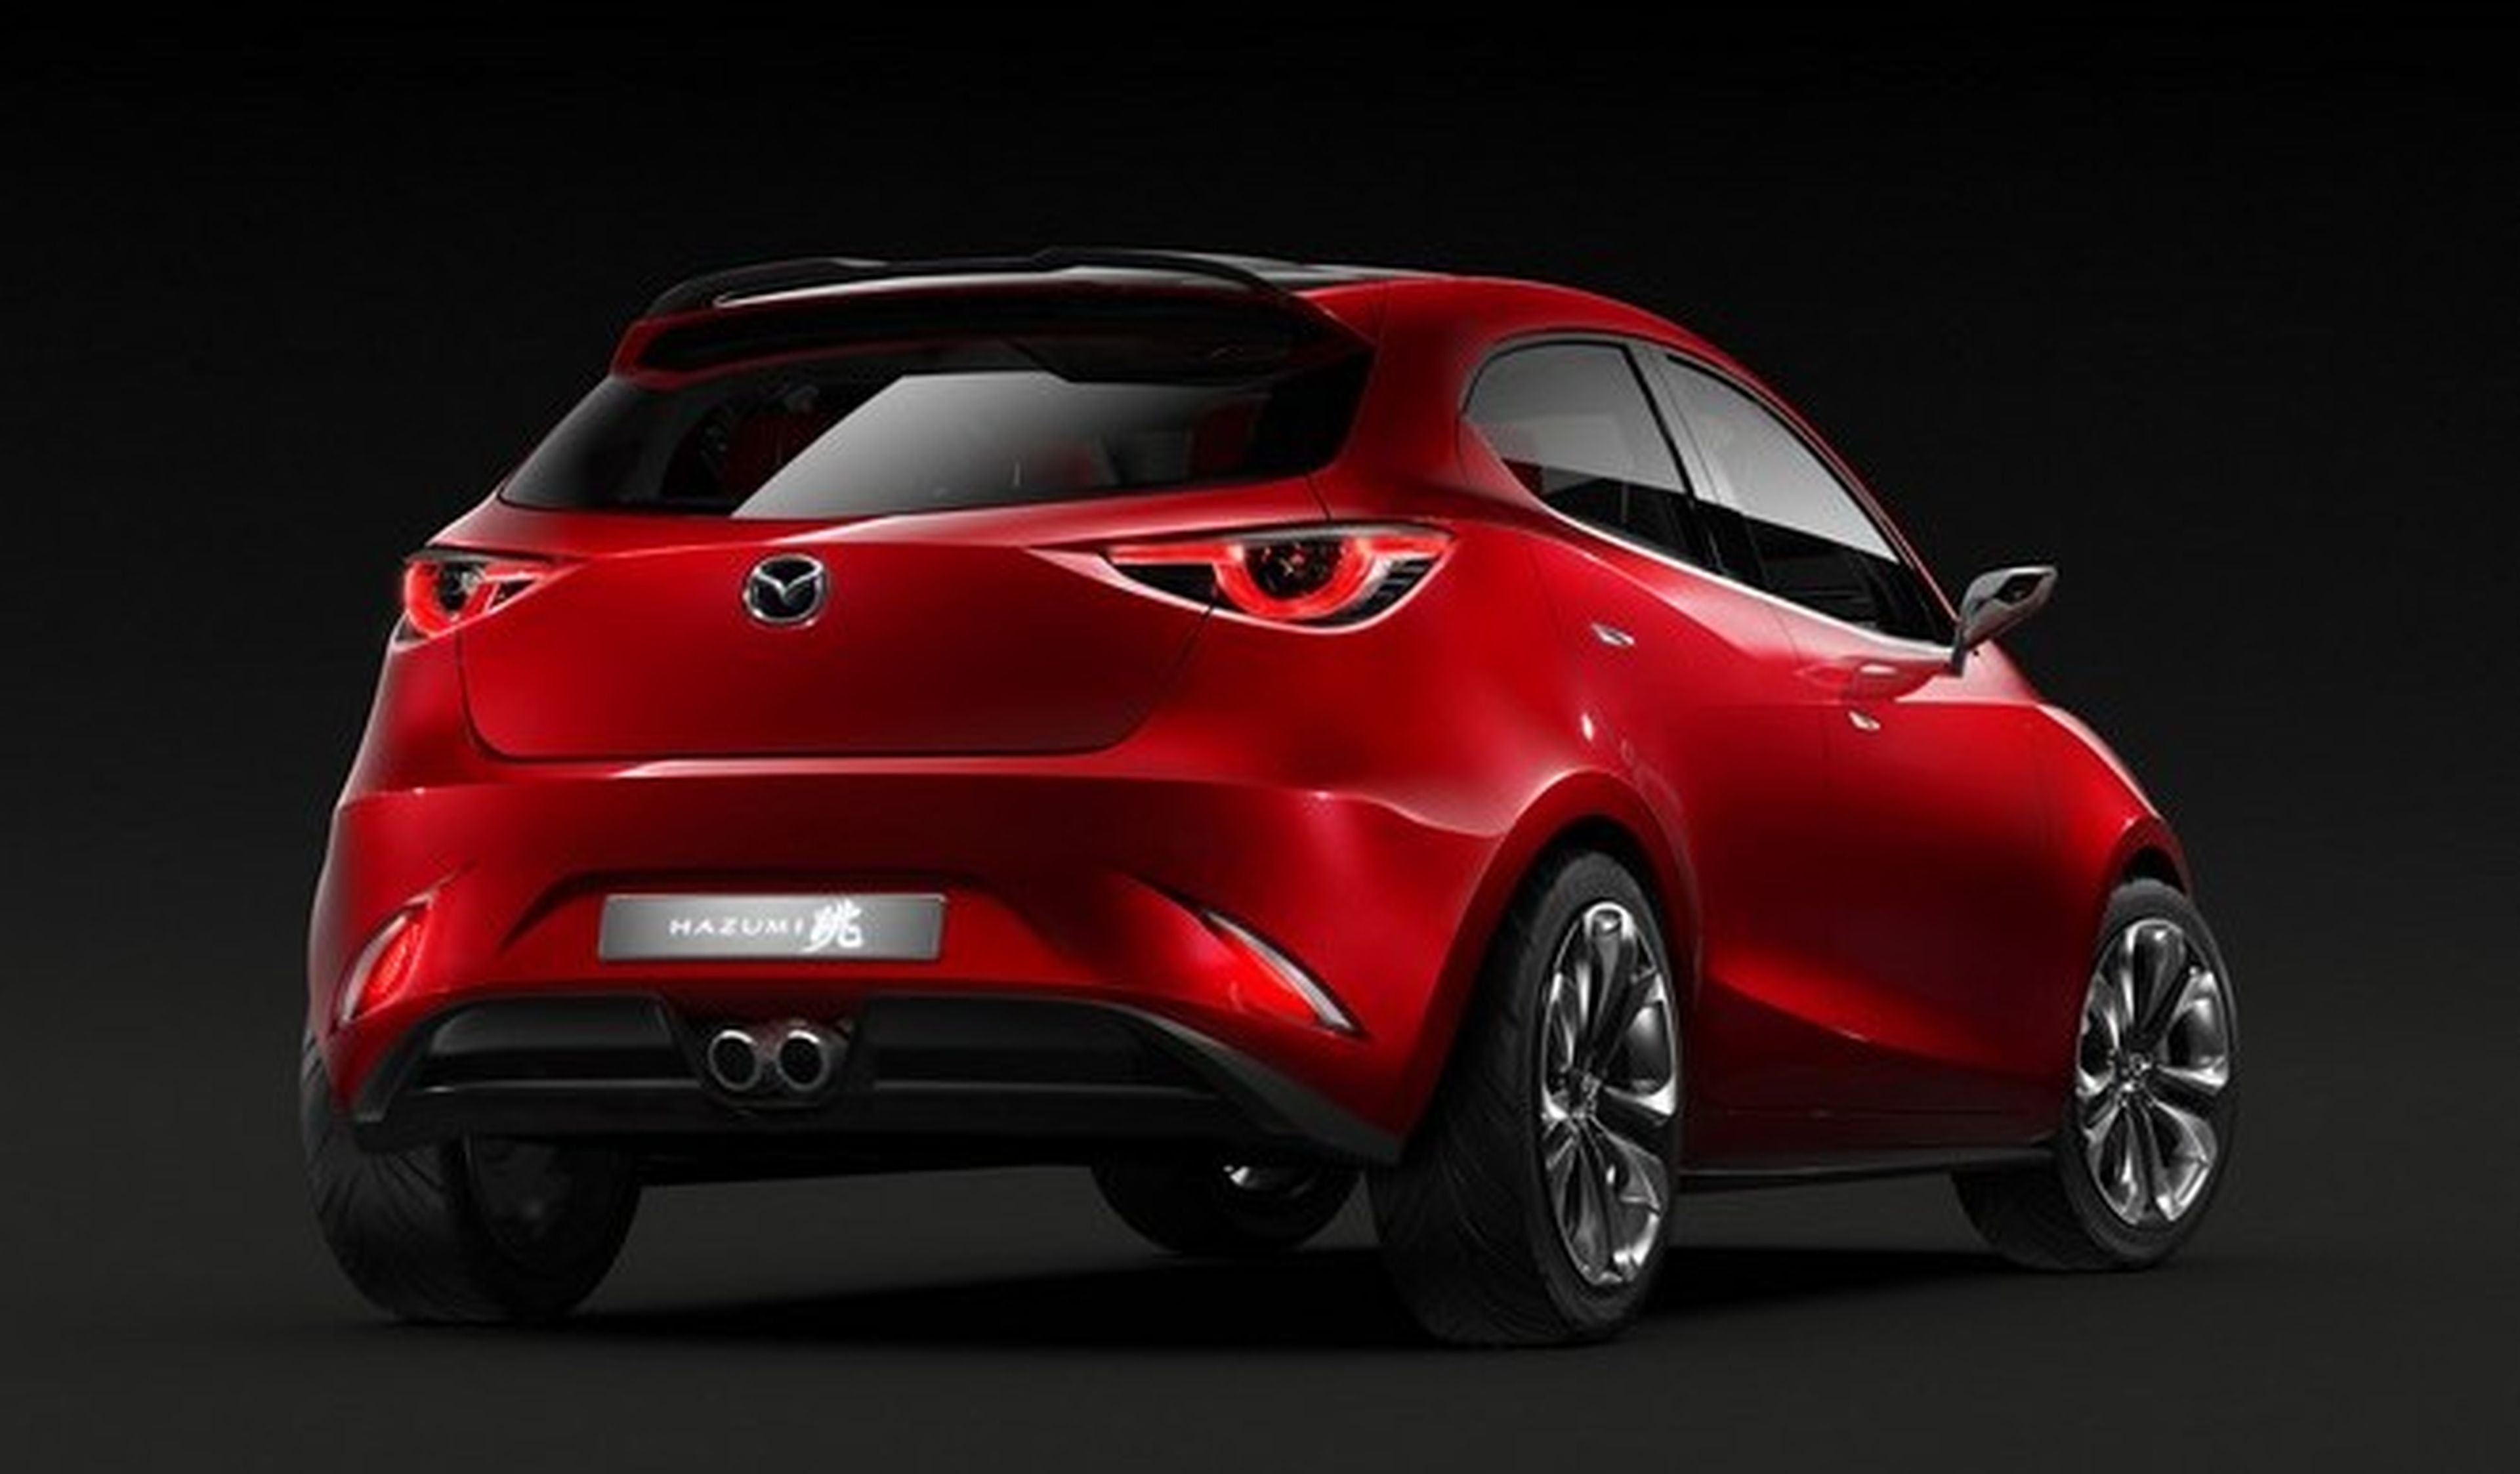 Mazda emplearía el motor rotativo para su coche eléctrico